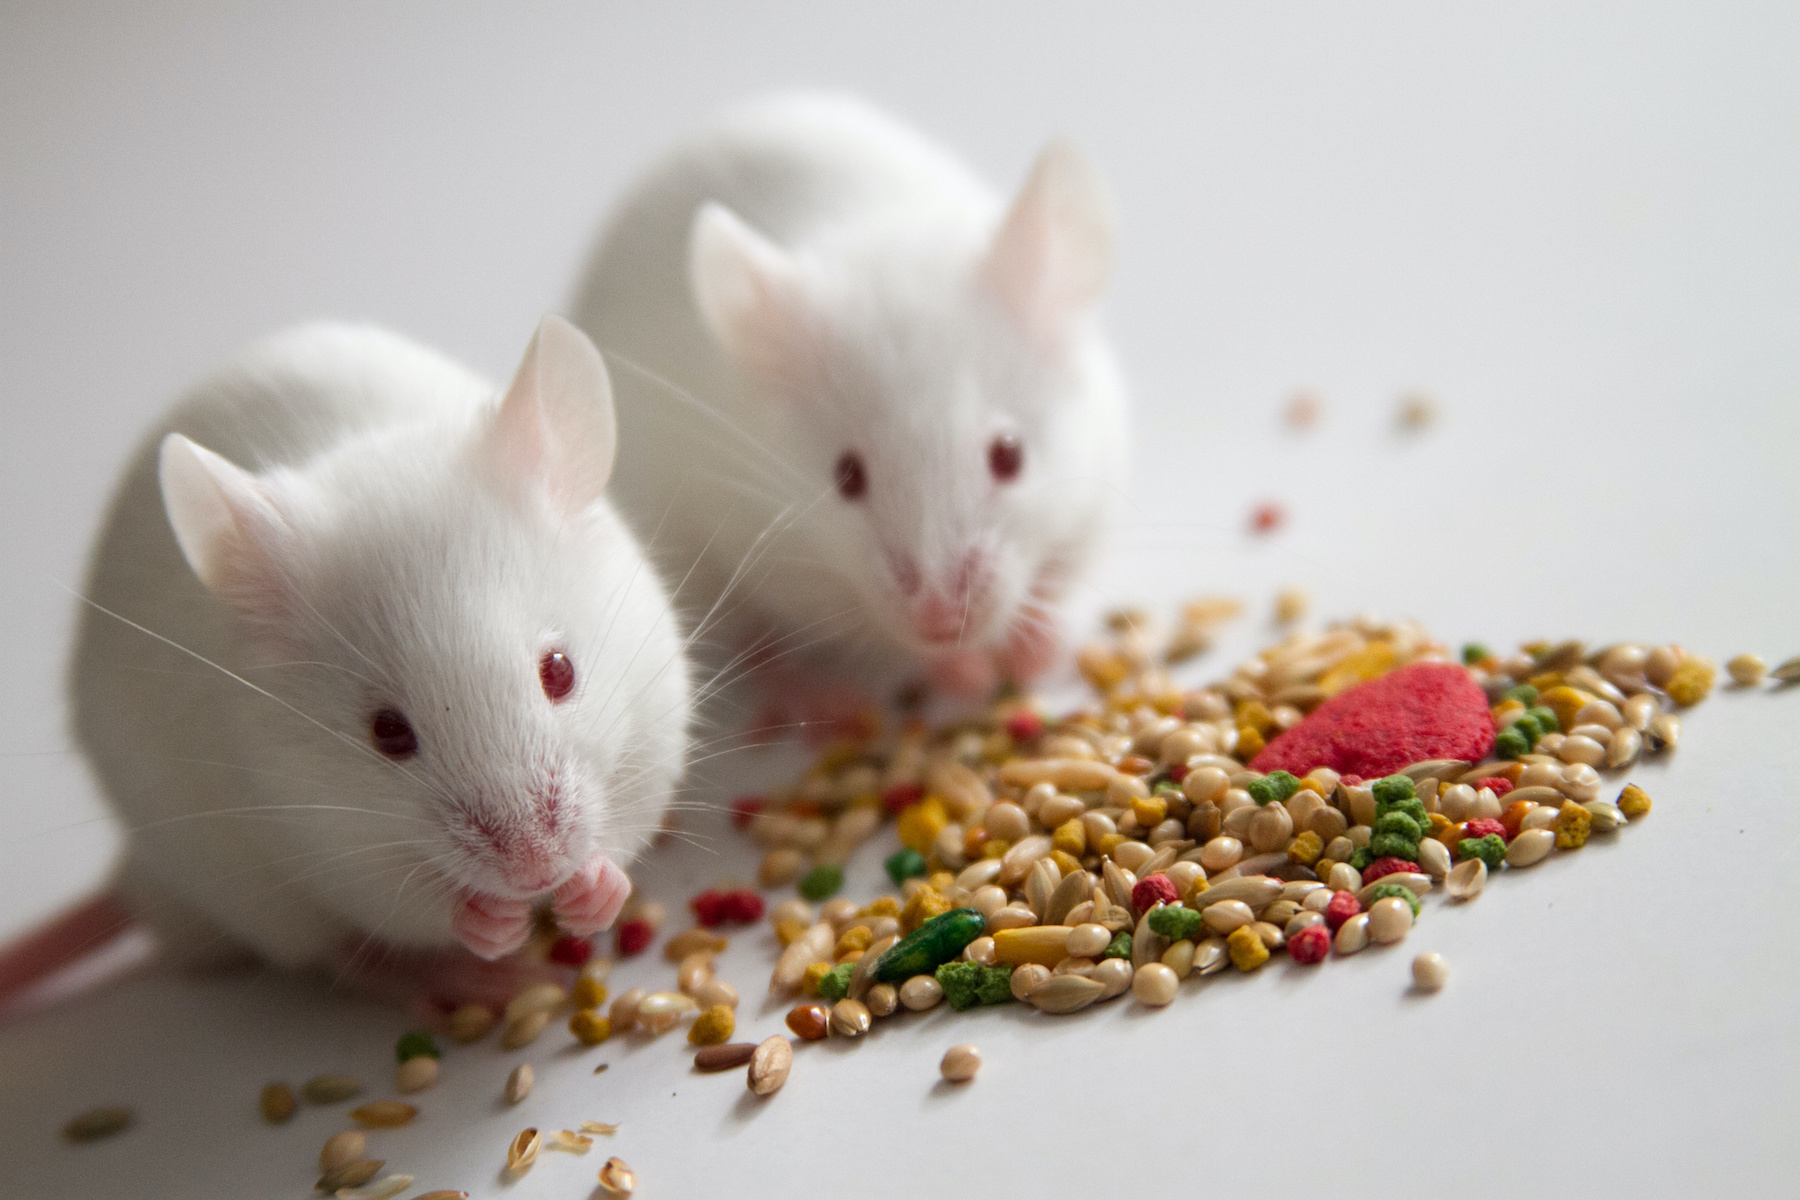 Les souris de laboratoire sont souvent nourries avec des granulés de faible qualité nutritionnelle. © Rob, Adobe Stock